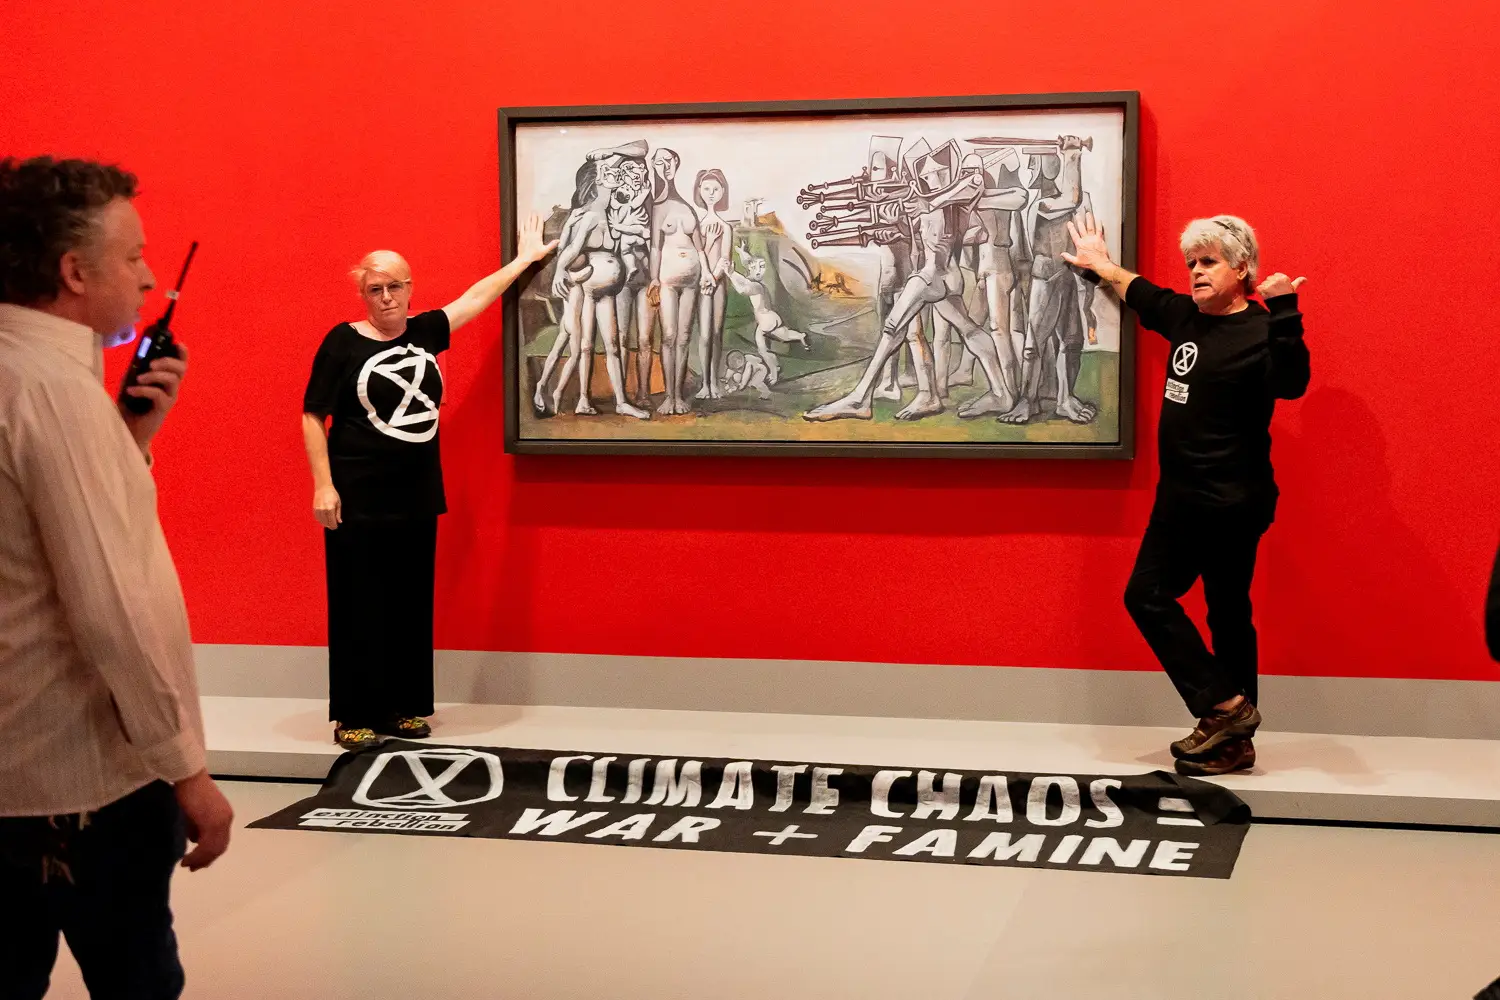 Ativistas colam-se a pintura de Picasso em protesto